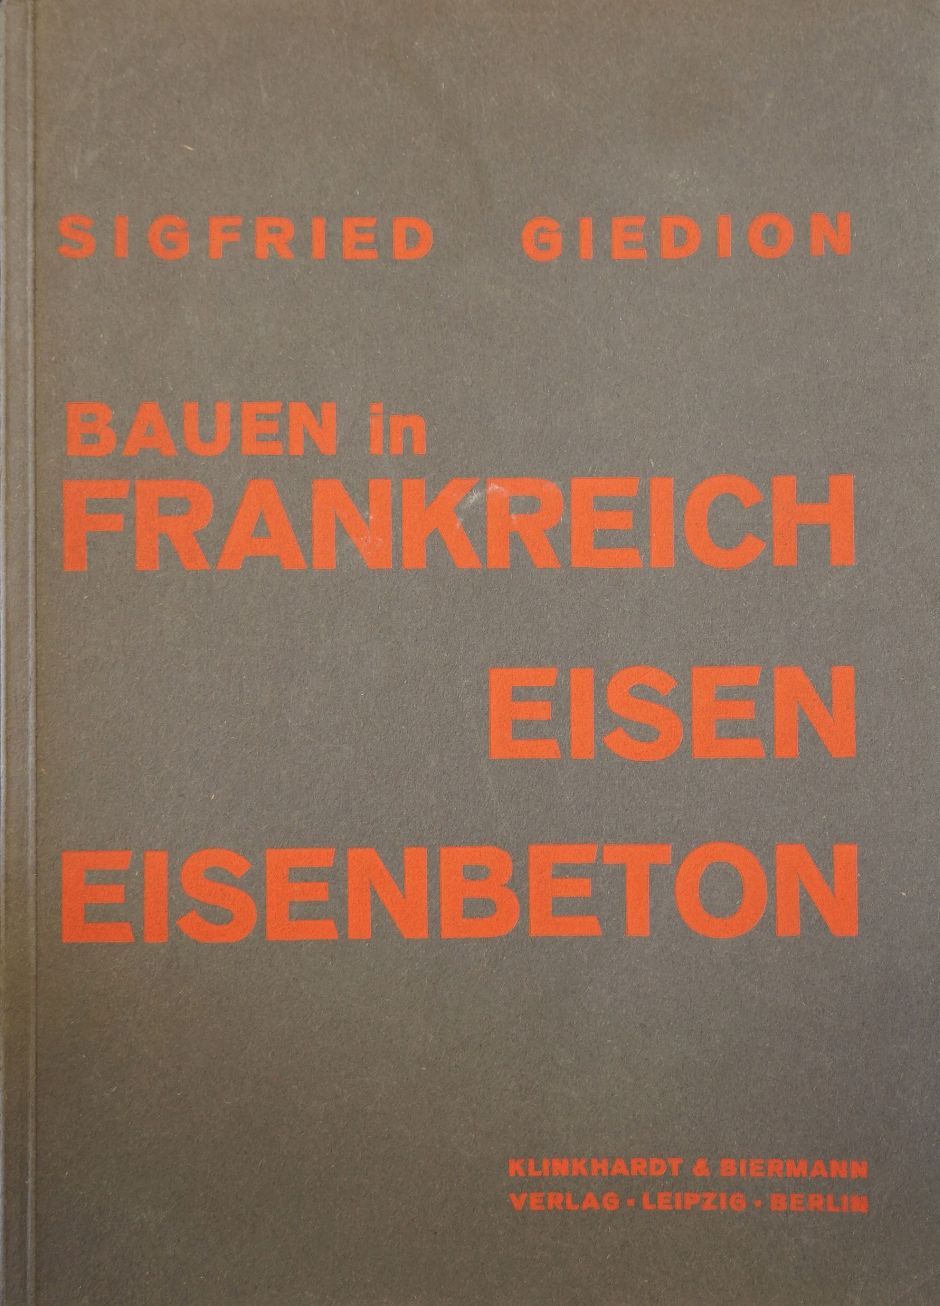 Lot 3476, Auction  115, Giedion, Siegfried, Bauen in Frankreich